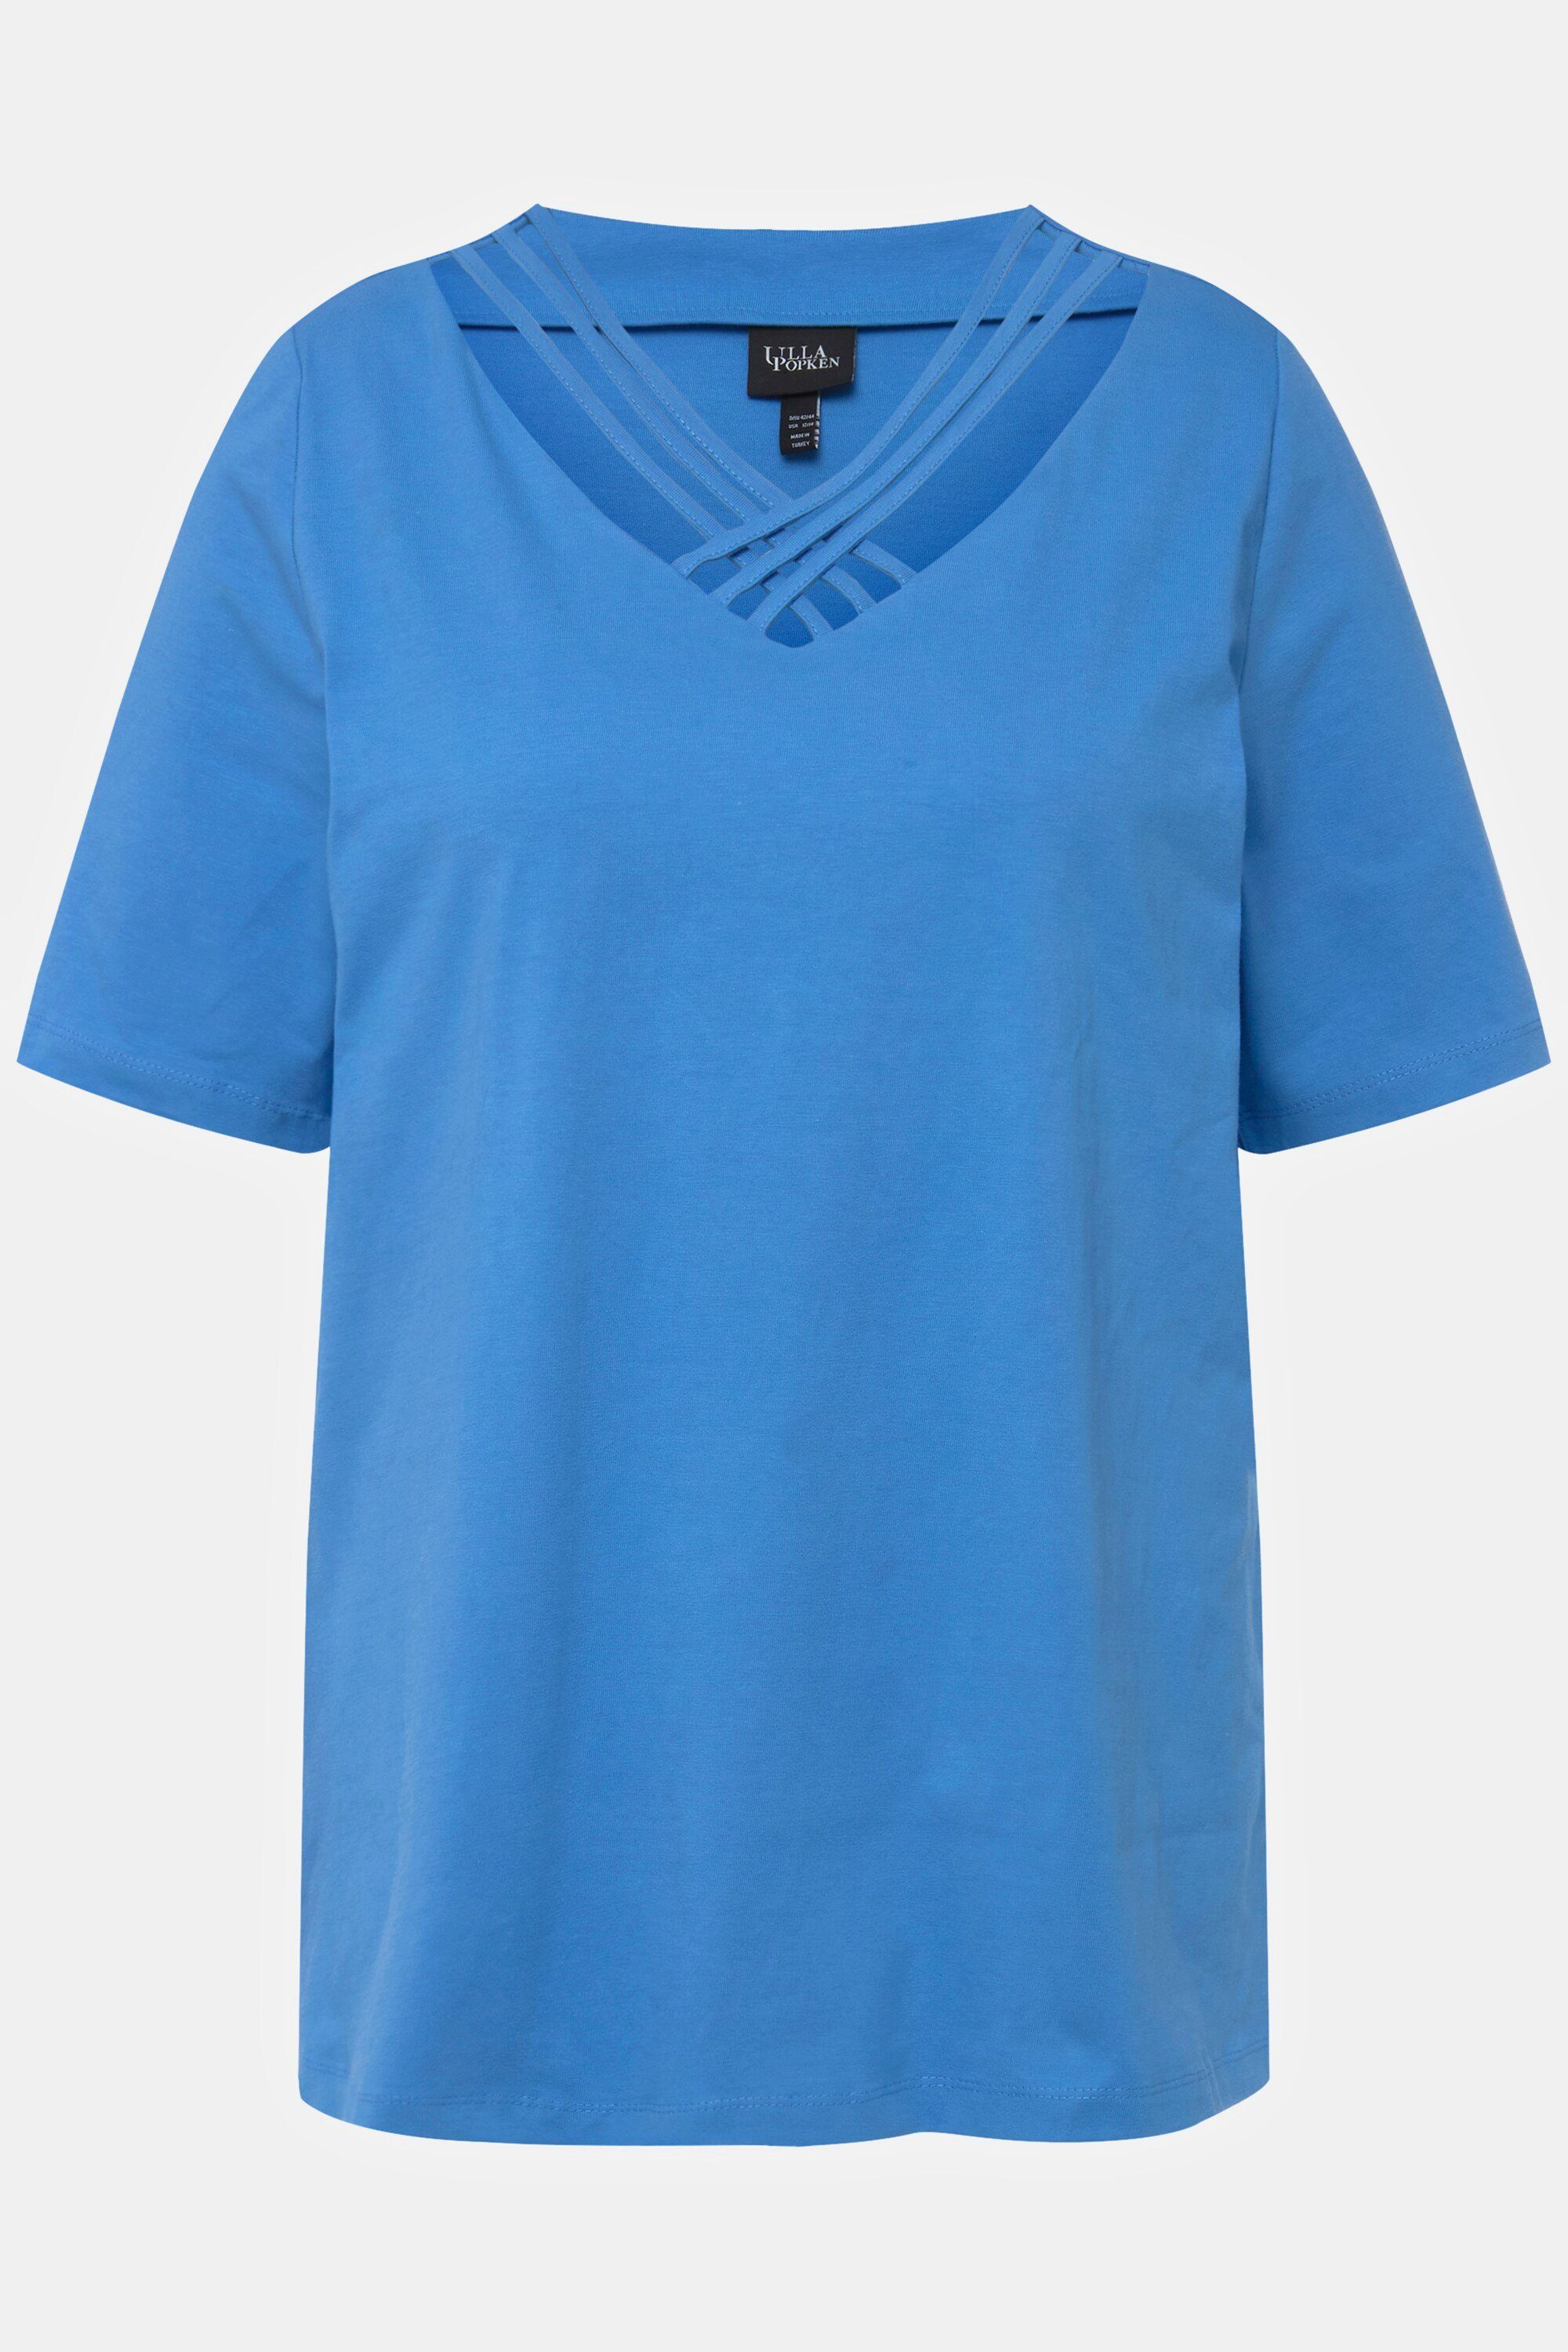 stahlblau Zierbänder T-Shirt V-Ausschnitt Classic Ulla Halbarm Popken Rundhalsshirt